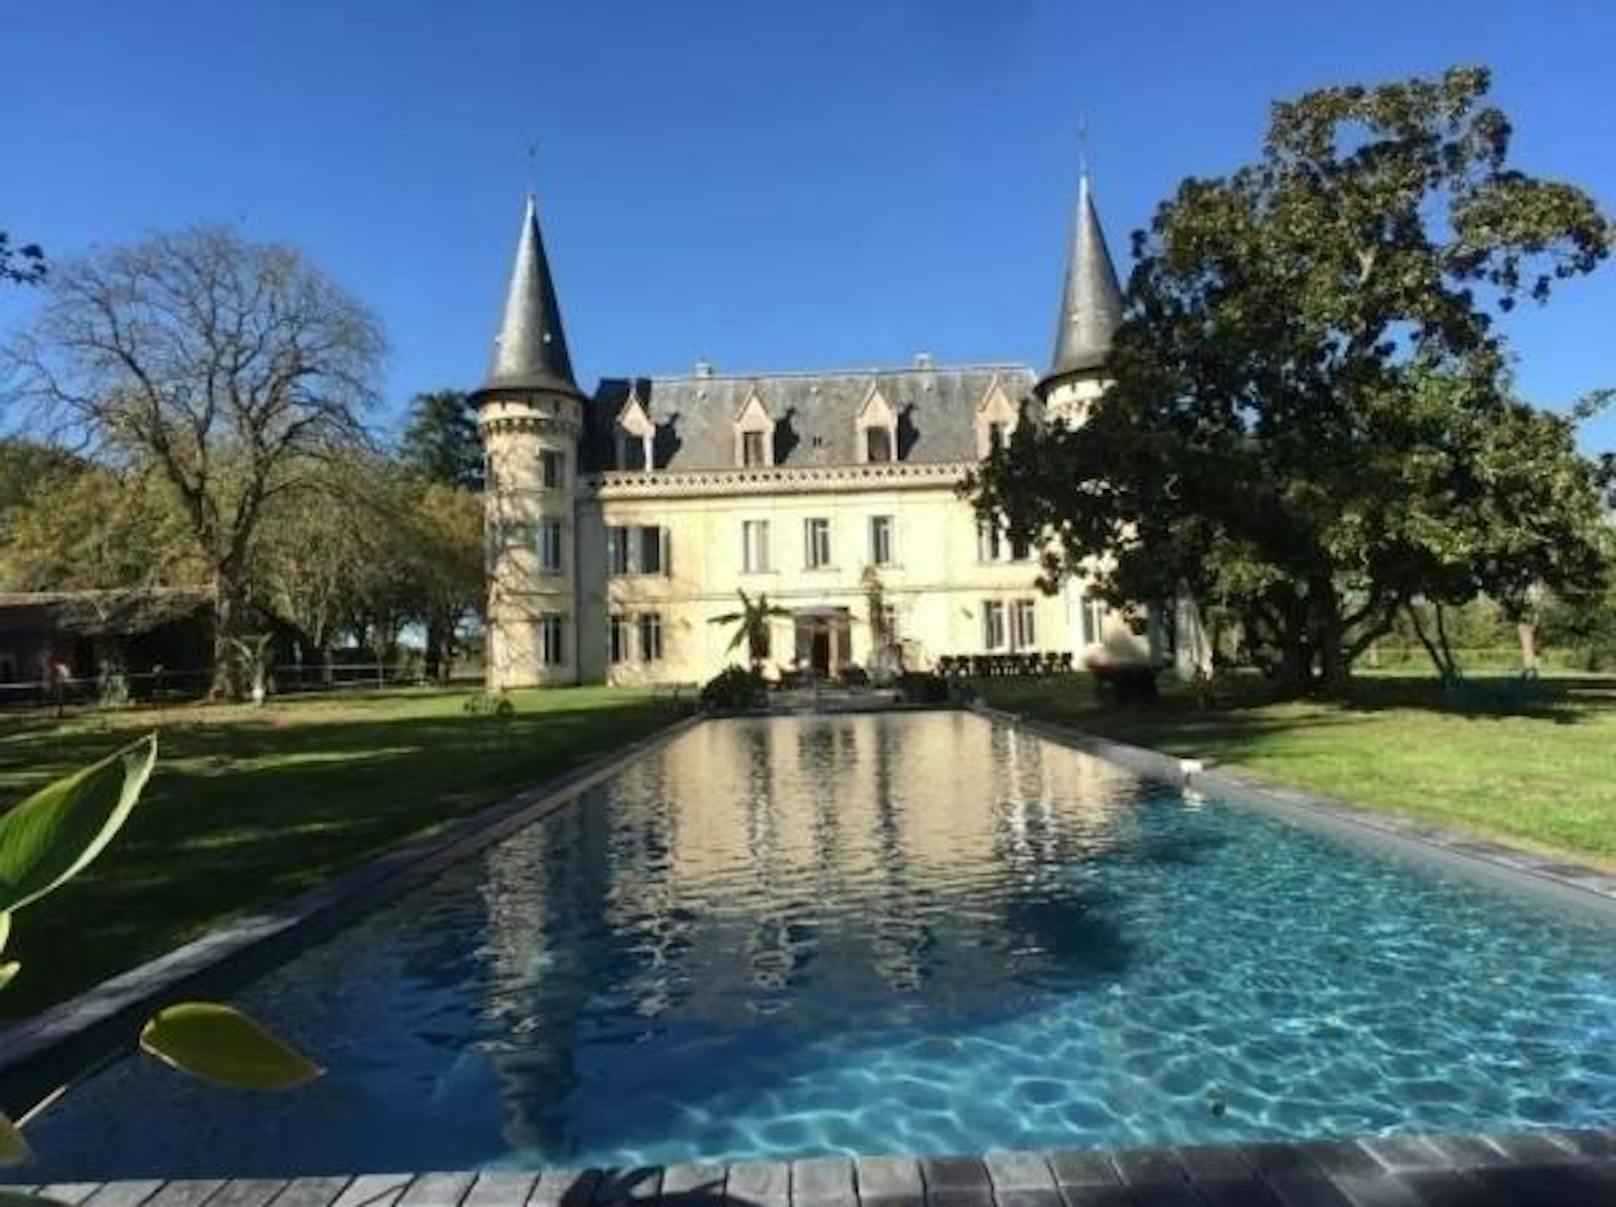 <b>Château Casanova, Saint-Sulpice-et-Cameyrac, Frankreich</b>
Das kürzlich renovierte Schloss liegt in einem 16 Hektar großen Weinanbaugebiet.